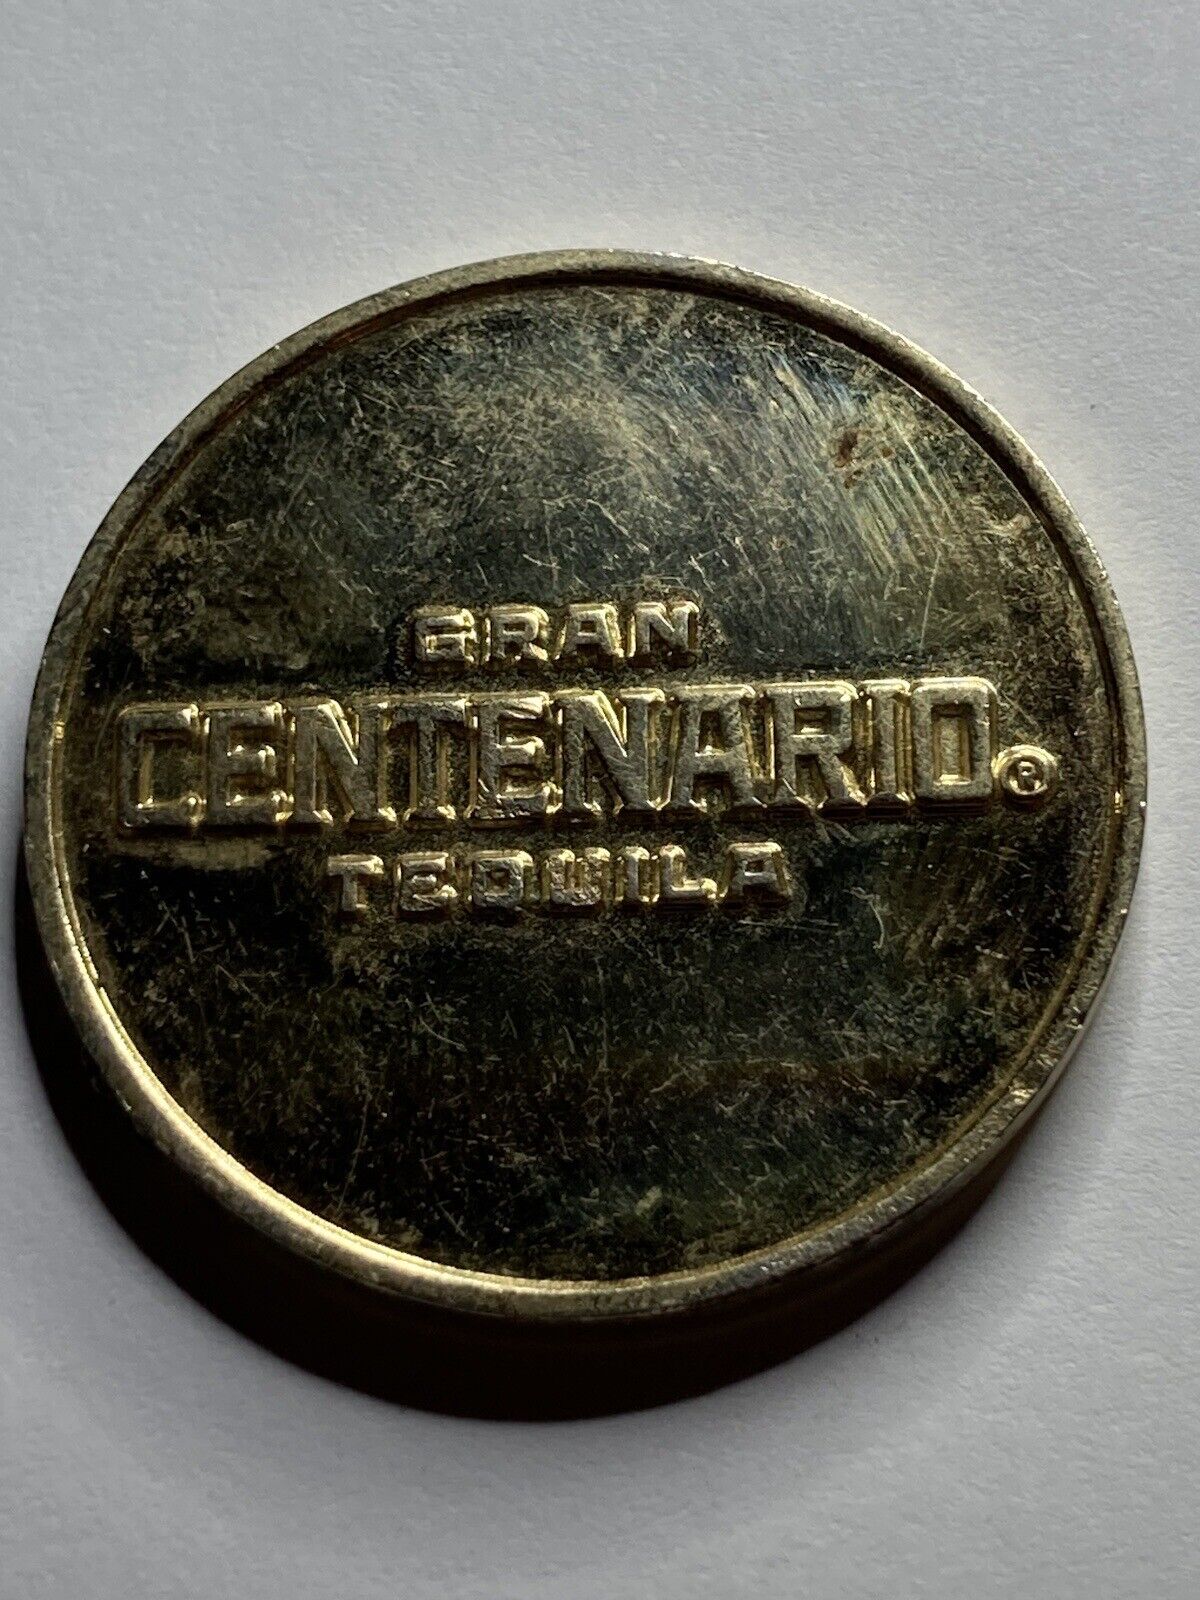 Huge 1 Oz Gran Centenario Tequila Coin Medal Token Rare #sd1